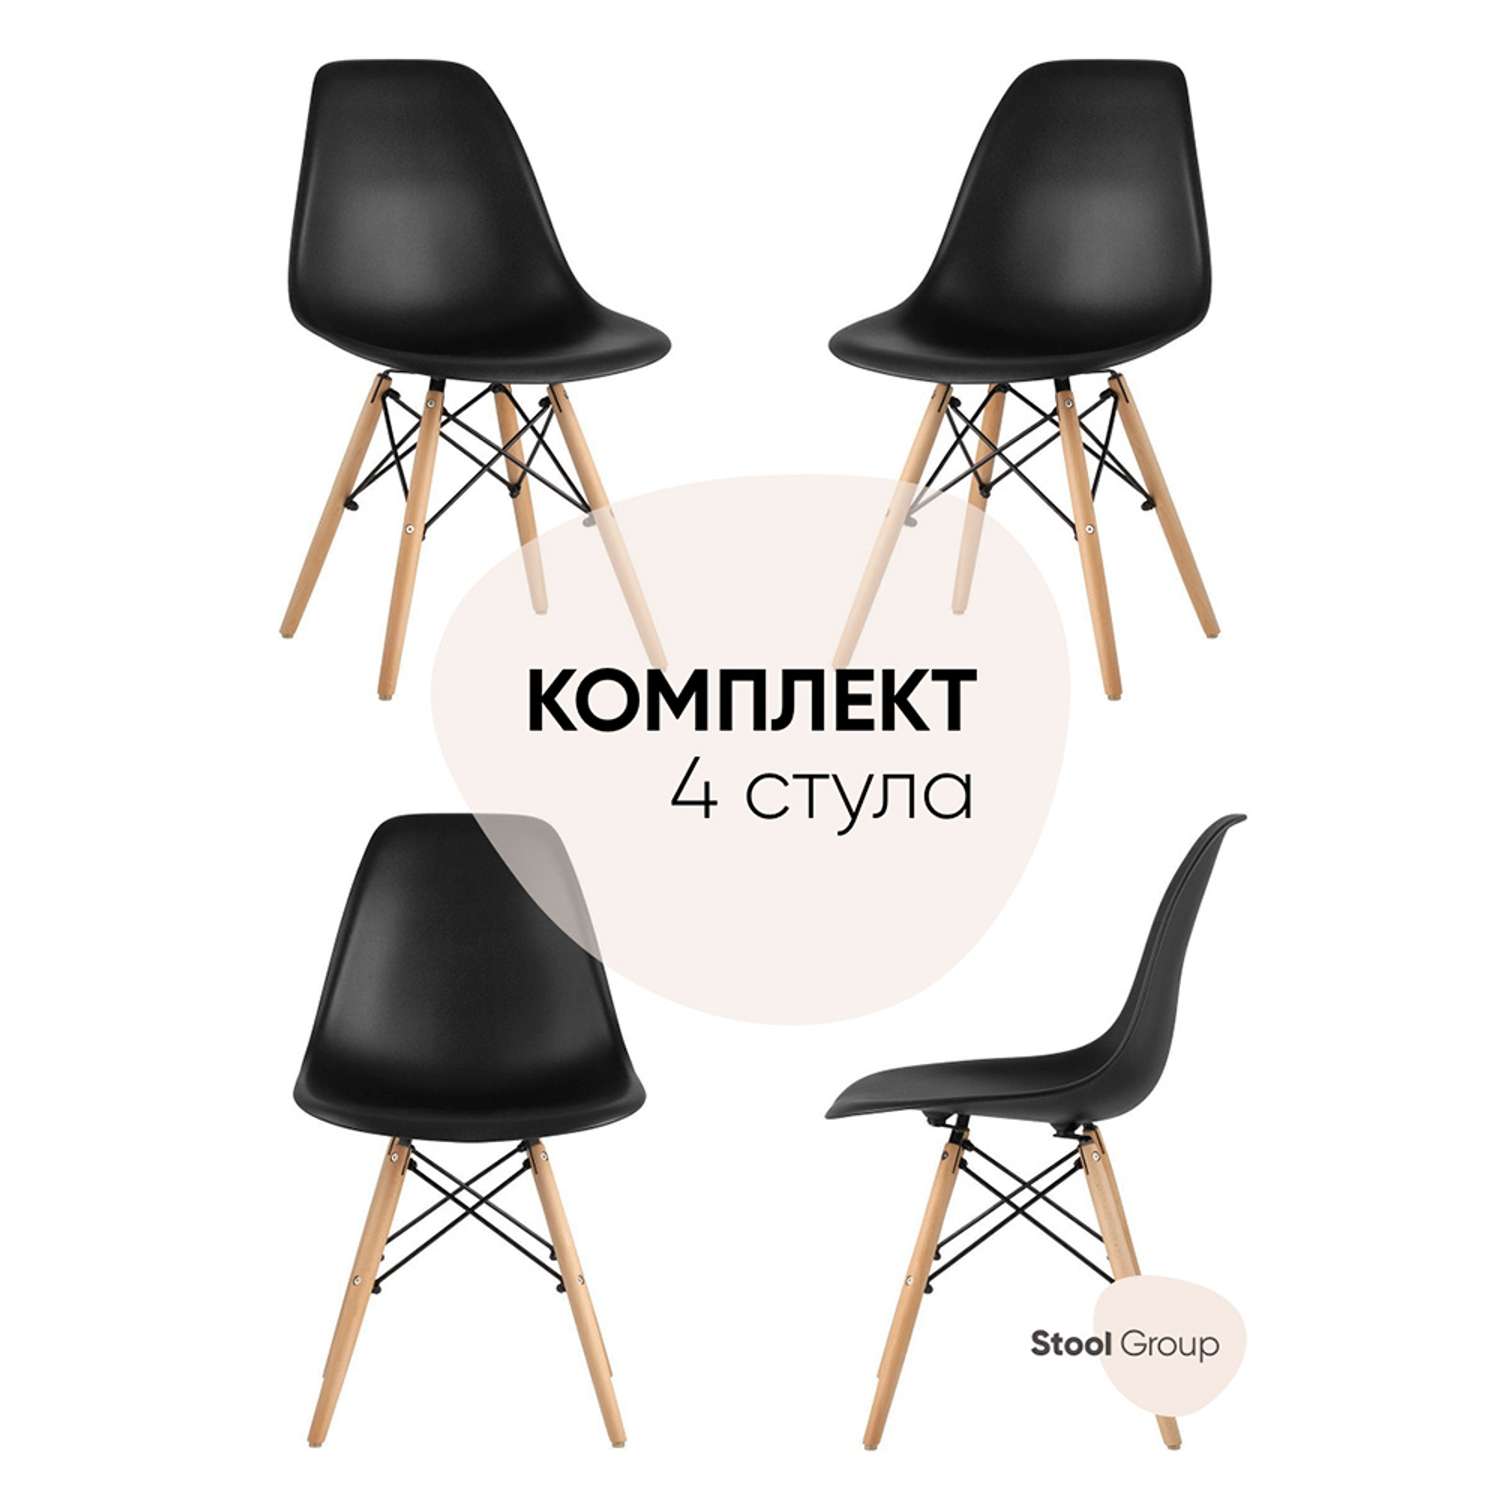 Комплект стульев Stool Group DSW Style черный - фото 2